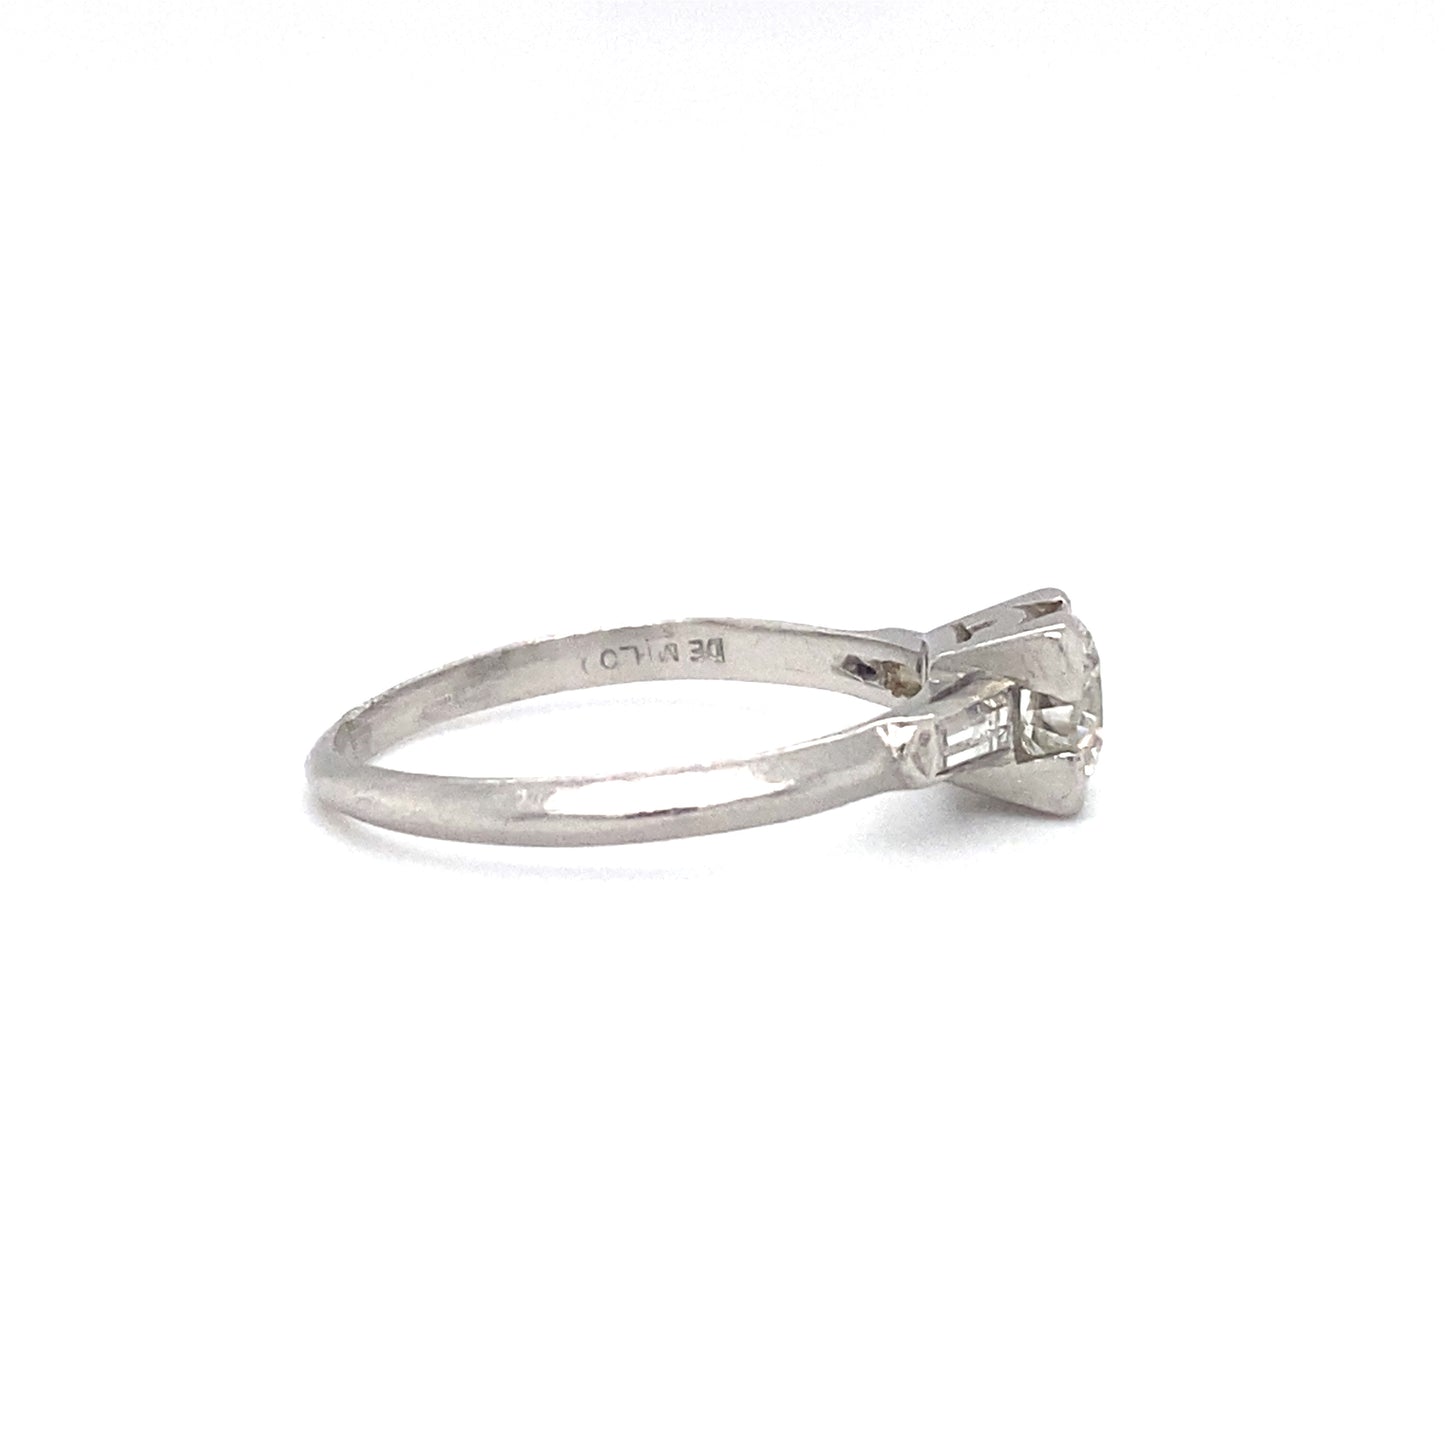 Circa 1920s 0.60ct Old European Cut Diamond Ring in Platinum